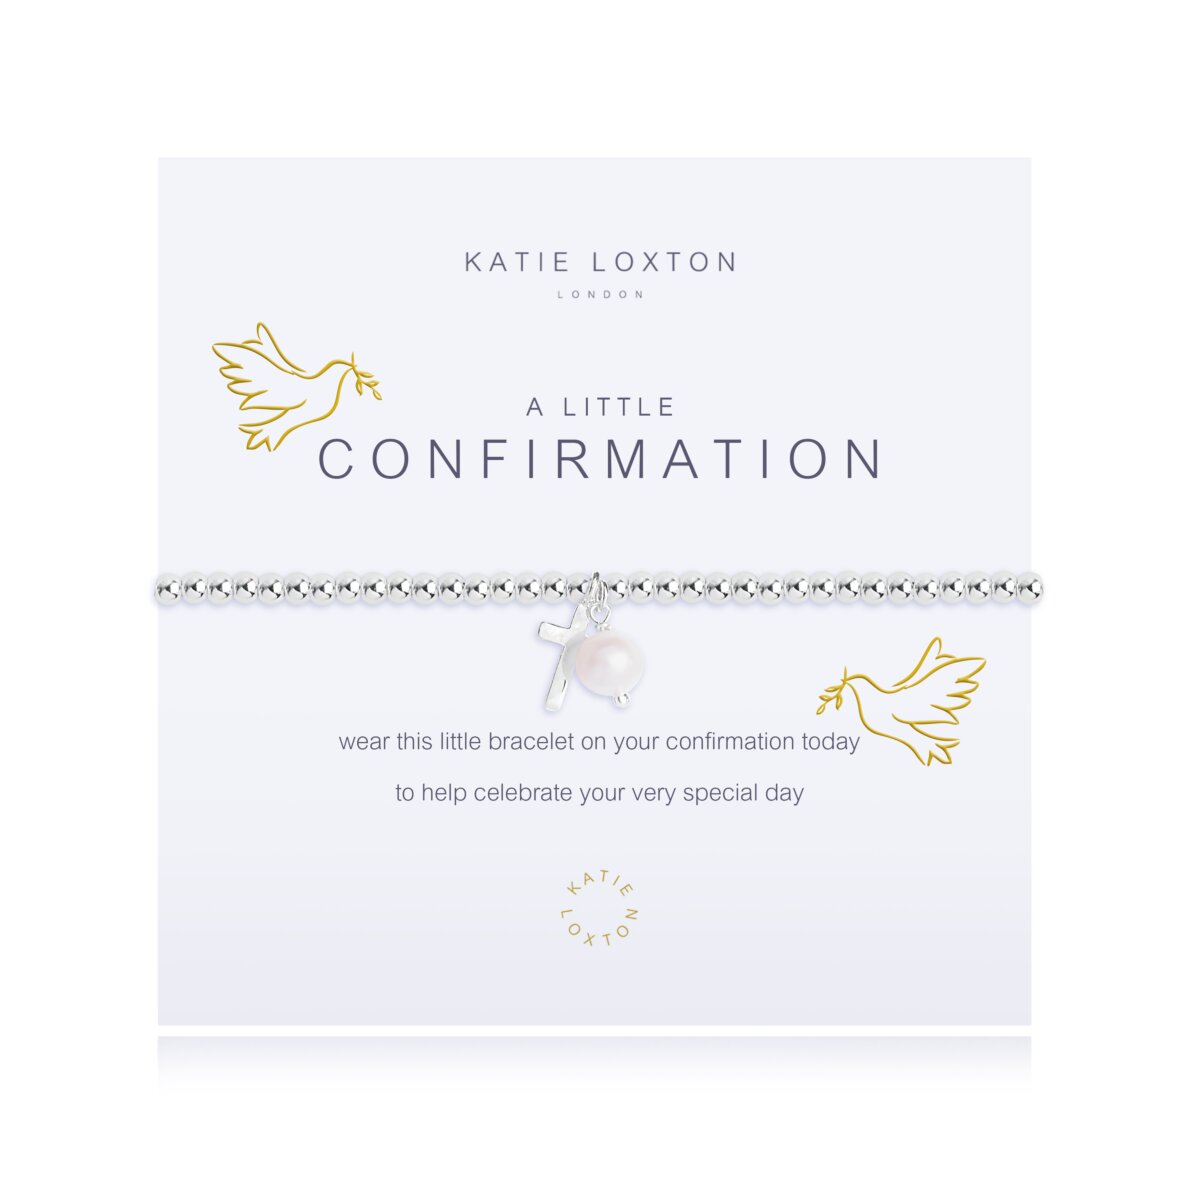 Katie Loxton Confirmation Bracelet